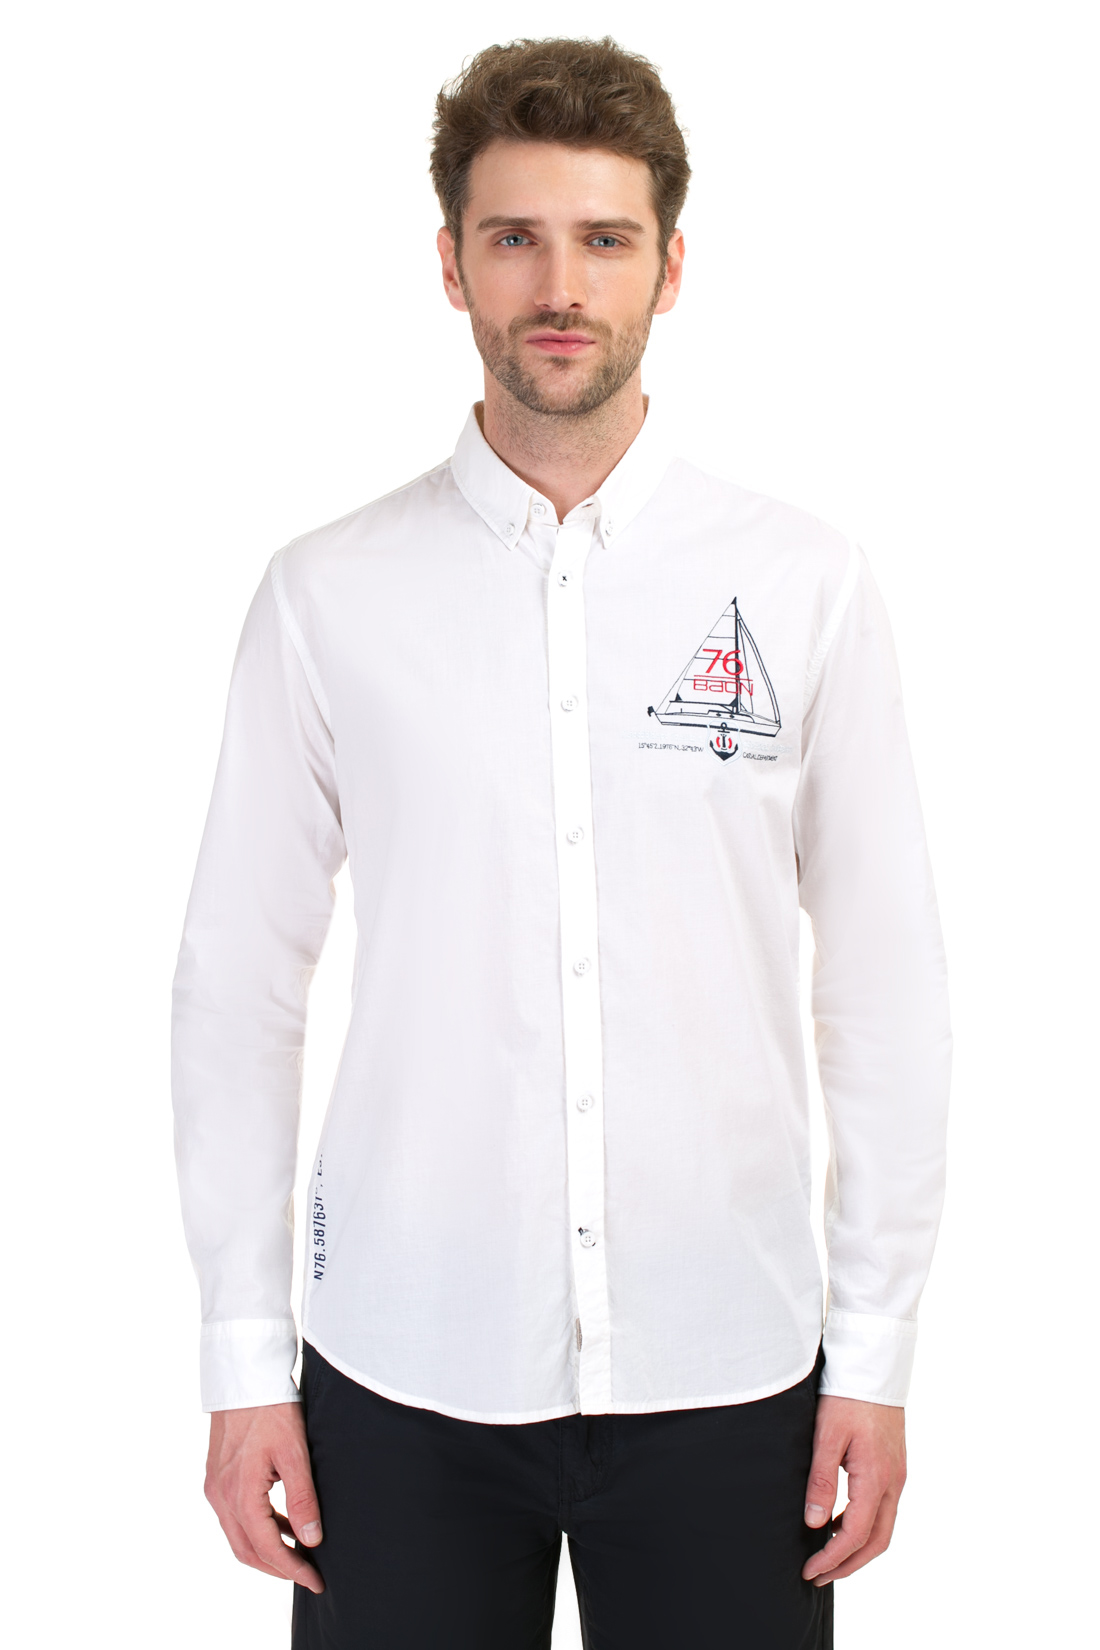 Рубашка в морском стиле (арт. baon B667001), размер XXL, цвет белый